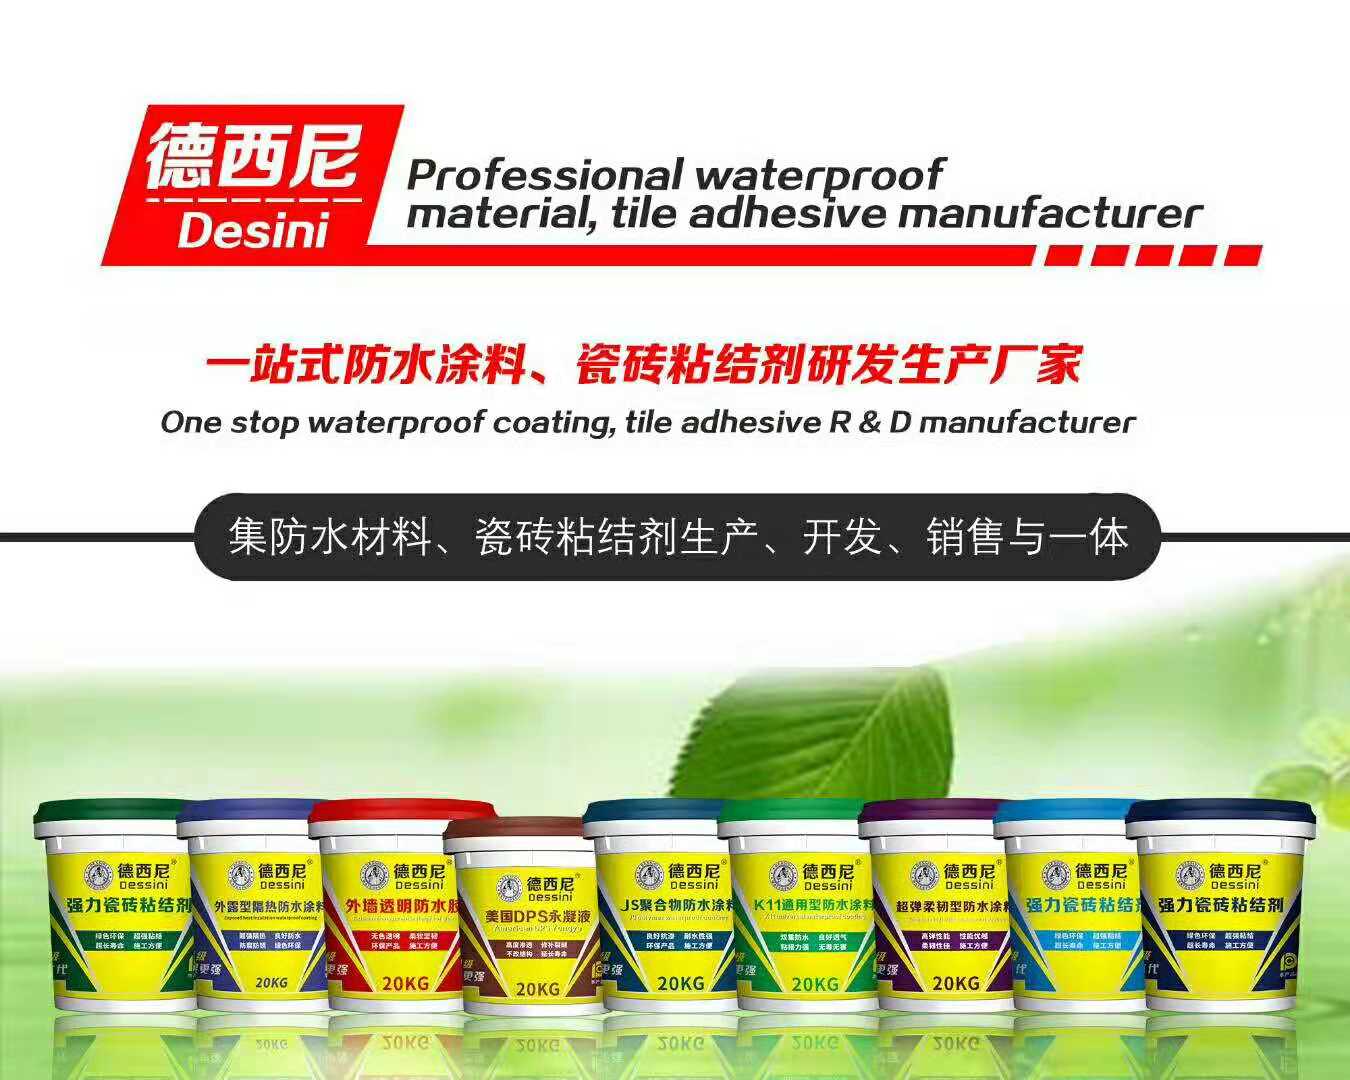 广州德西尼瓷砖粘结剂有限公司